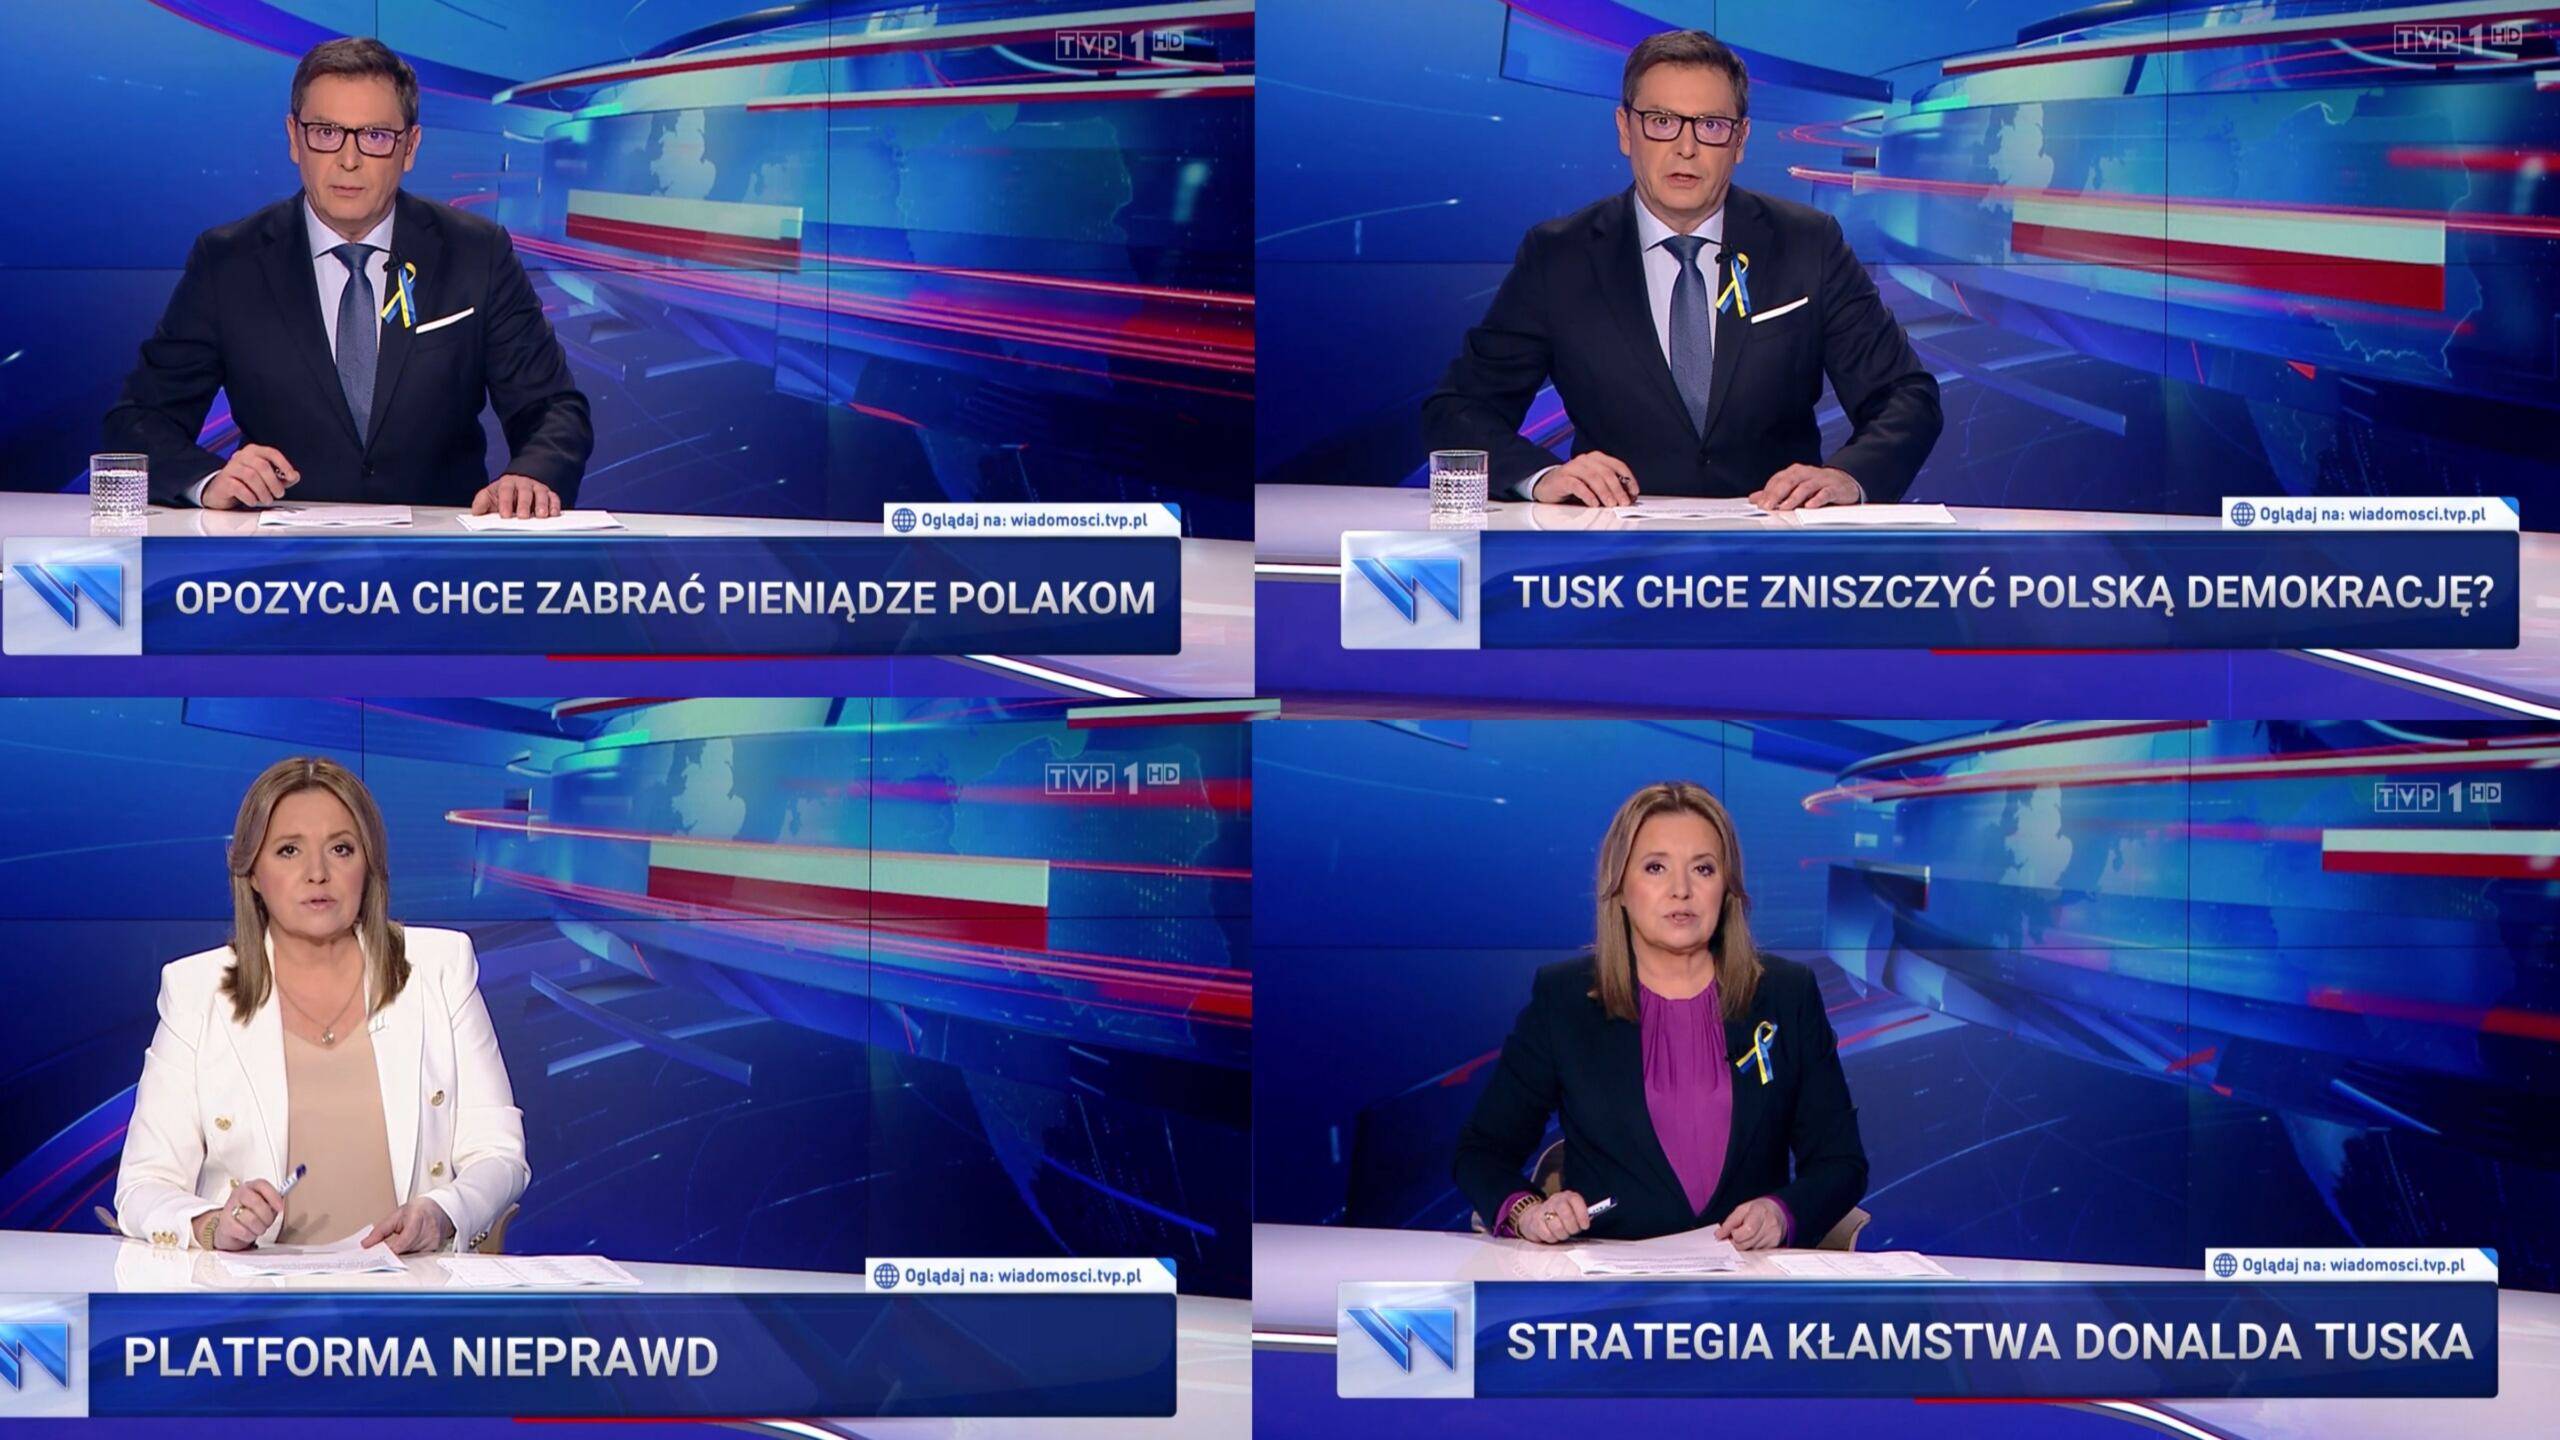 4 ekrany "Wiadomości" TVP z belkami informacyjny o treści: 'Opozycja chce zabrać pieniądze Polakom", "Tusk chce zniszczyć polską demokrację", "Platforma nieprawd" i "Strategia kłamstwa Donalda Tuska"